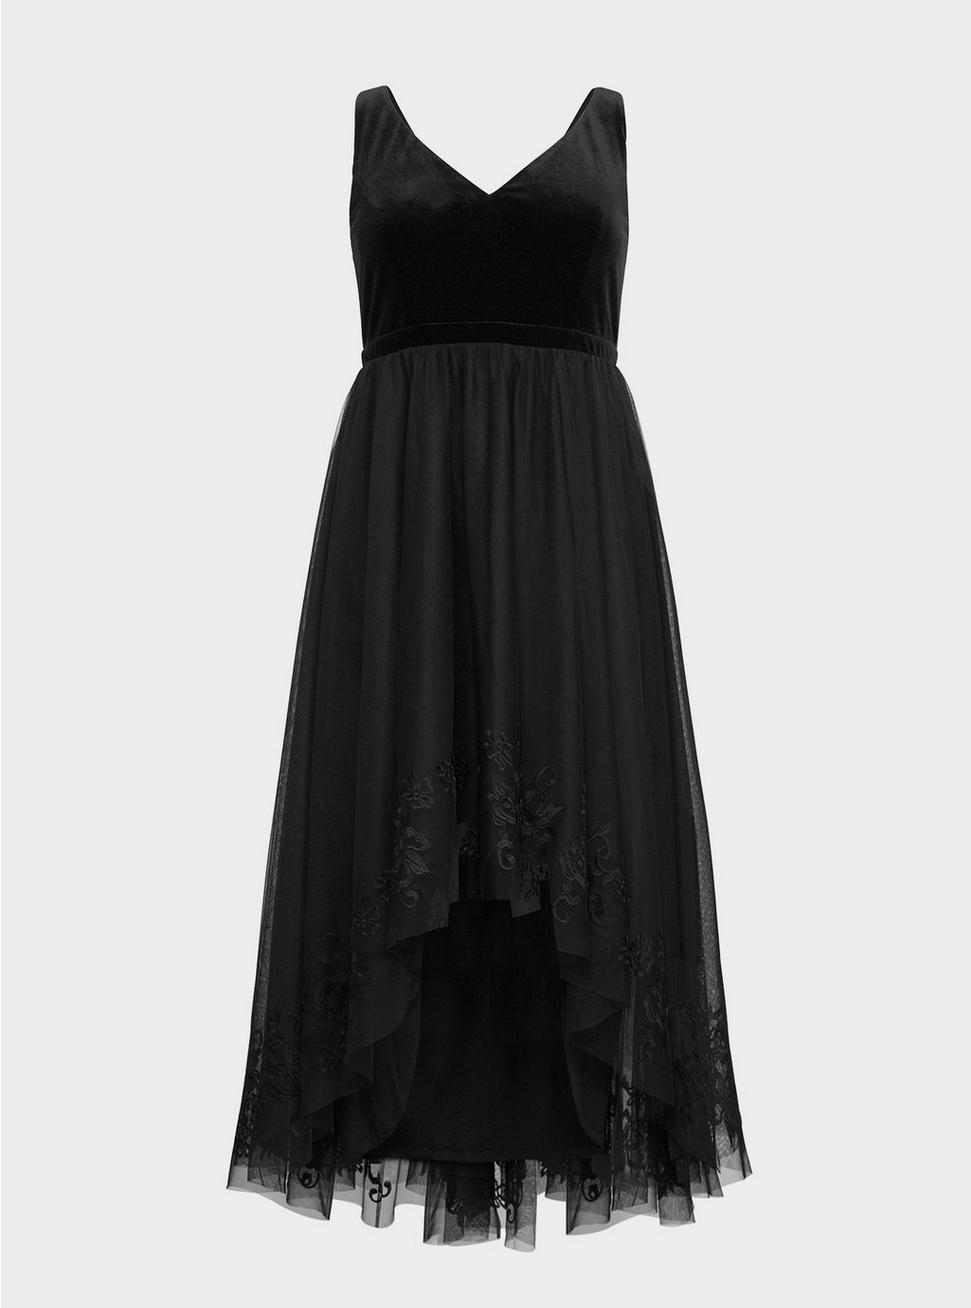 Plus Size - Special Occasion Black Velvet & Tulle Dress - Torrid